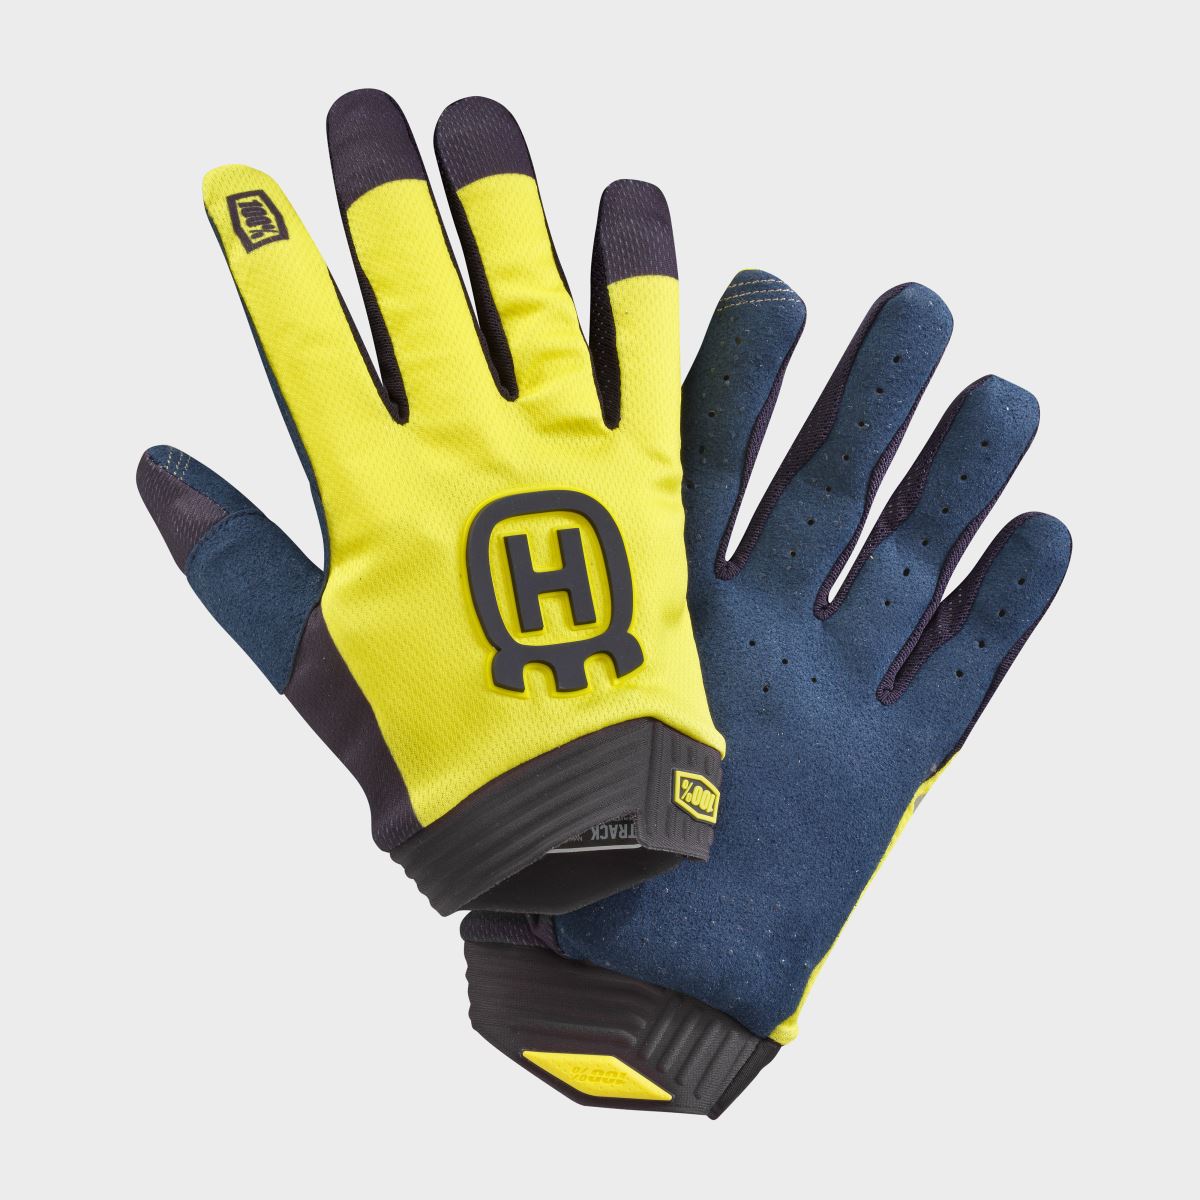 iTrack Railed Gloves